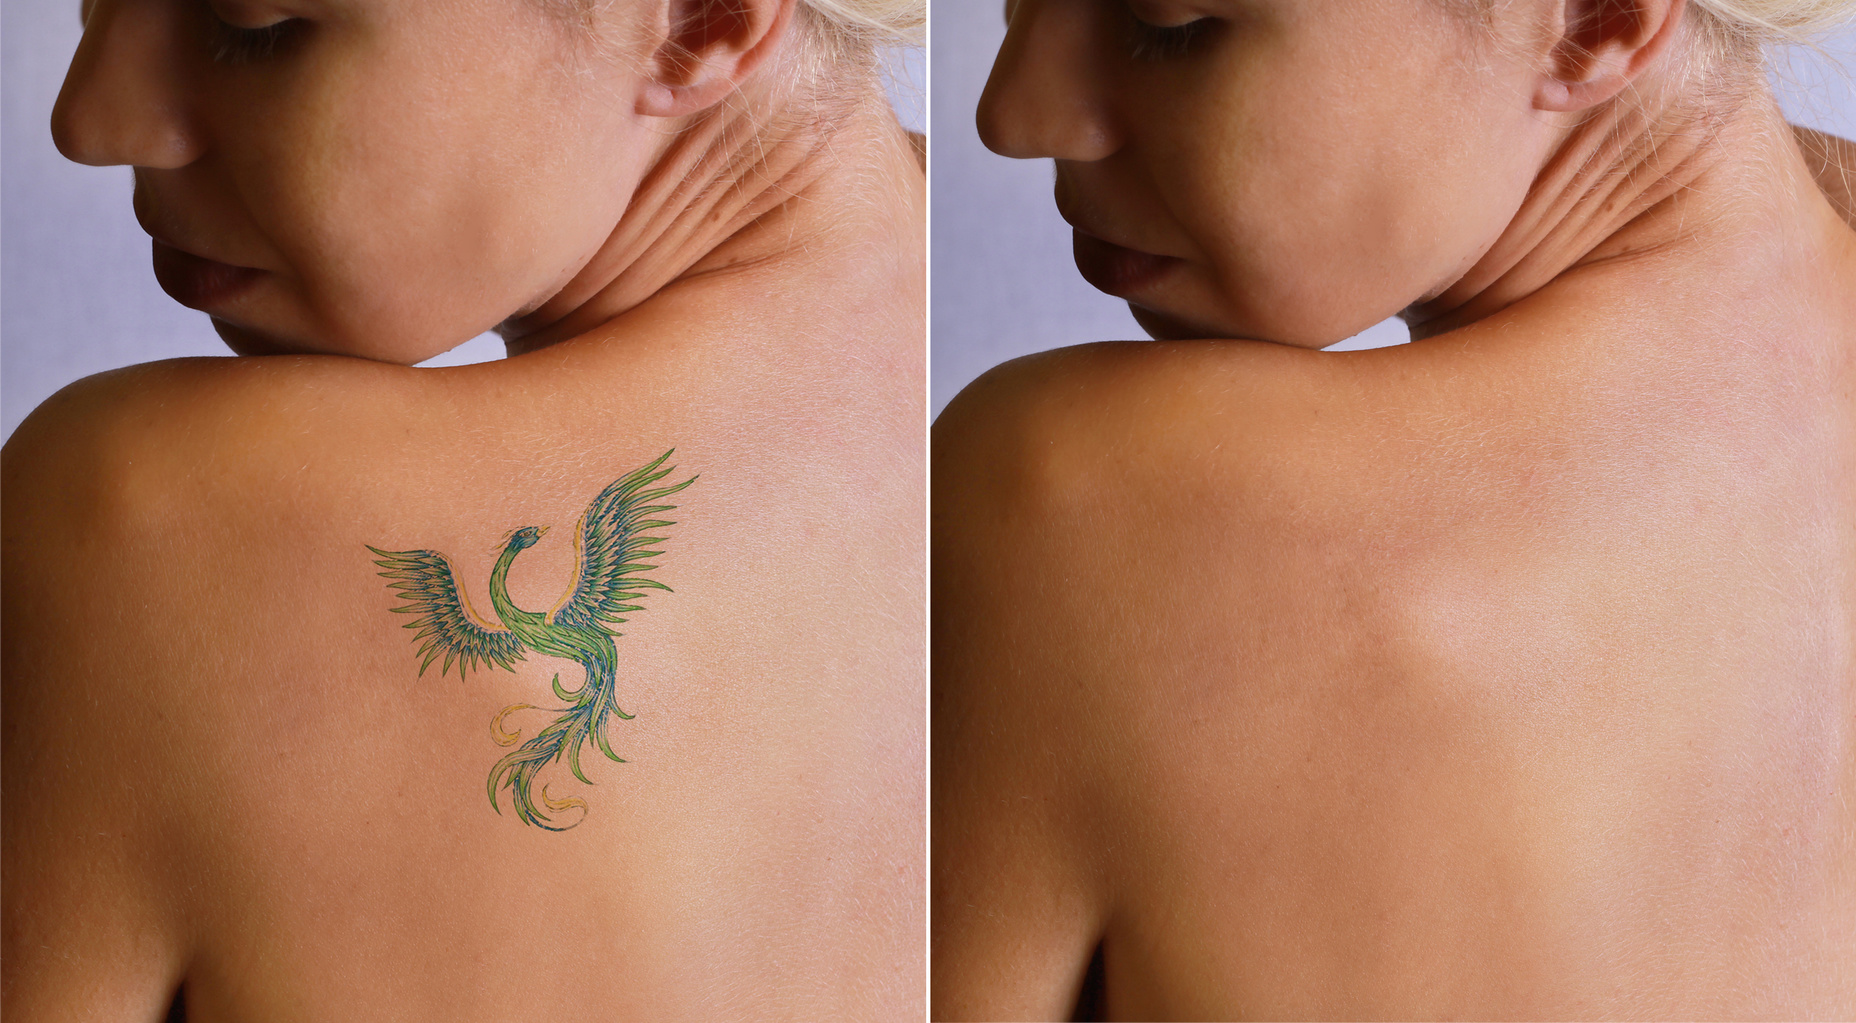 Eliminazione tatuaggi: 8 cose da sapere prima di rimuoverlo